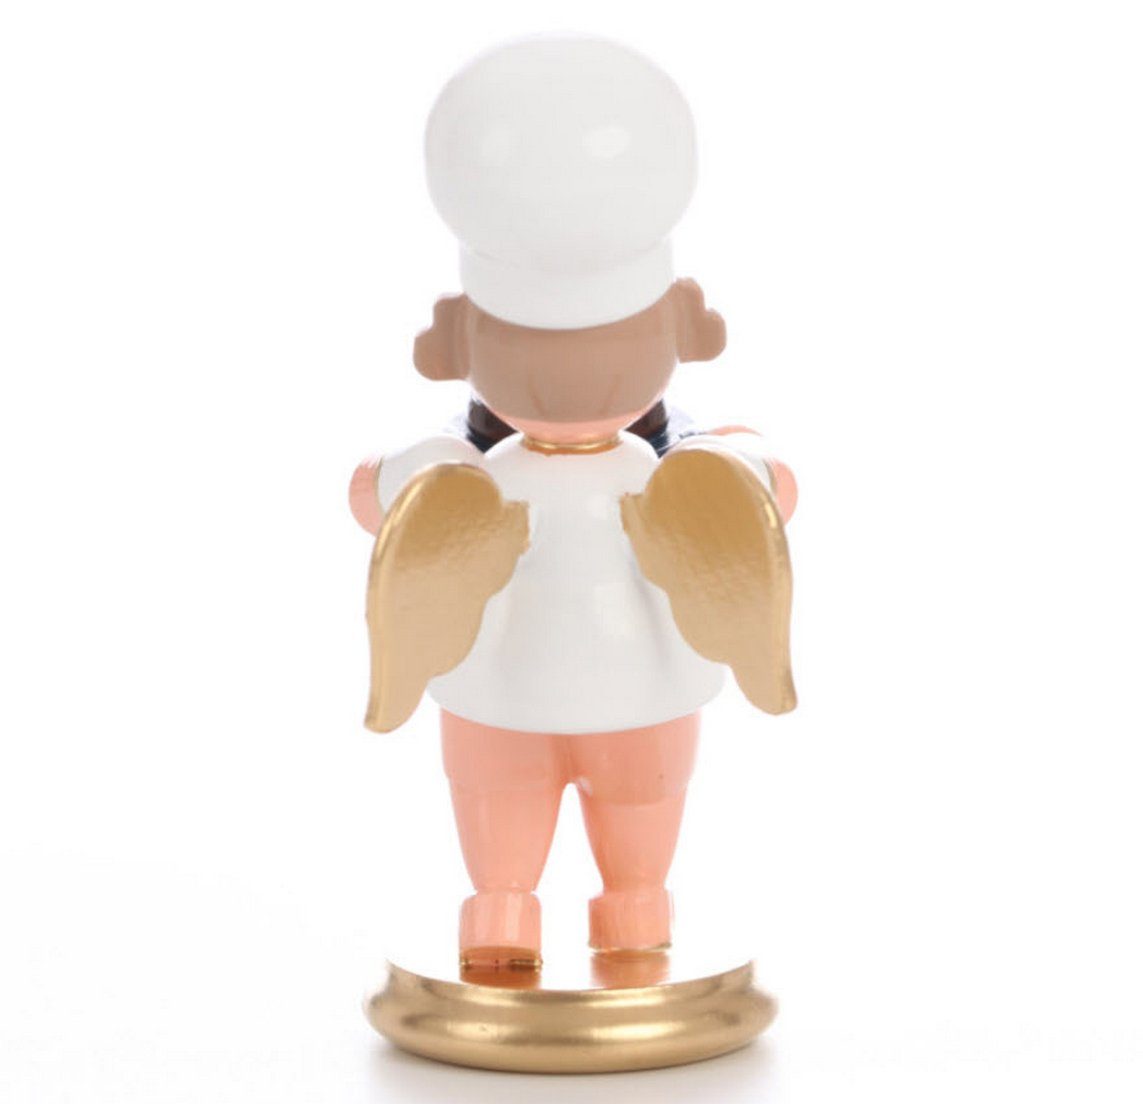 7.5cm' Miniaturen - Napfkuchen Ulbricht Ulbricht mit Christian 'Bäckerengel Dekofigur